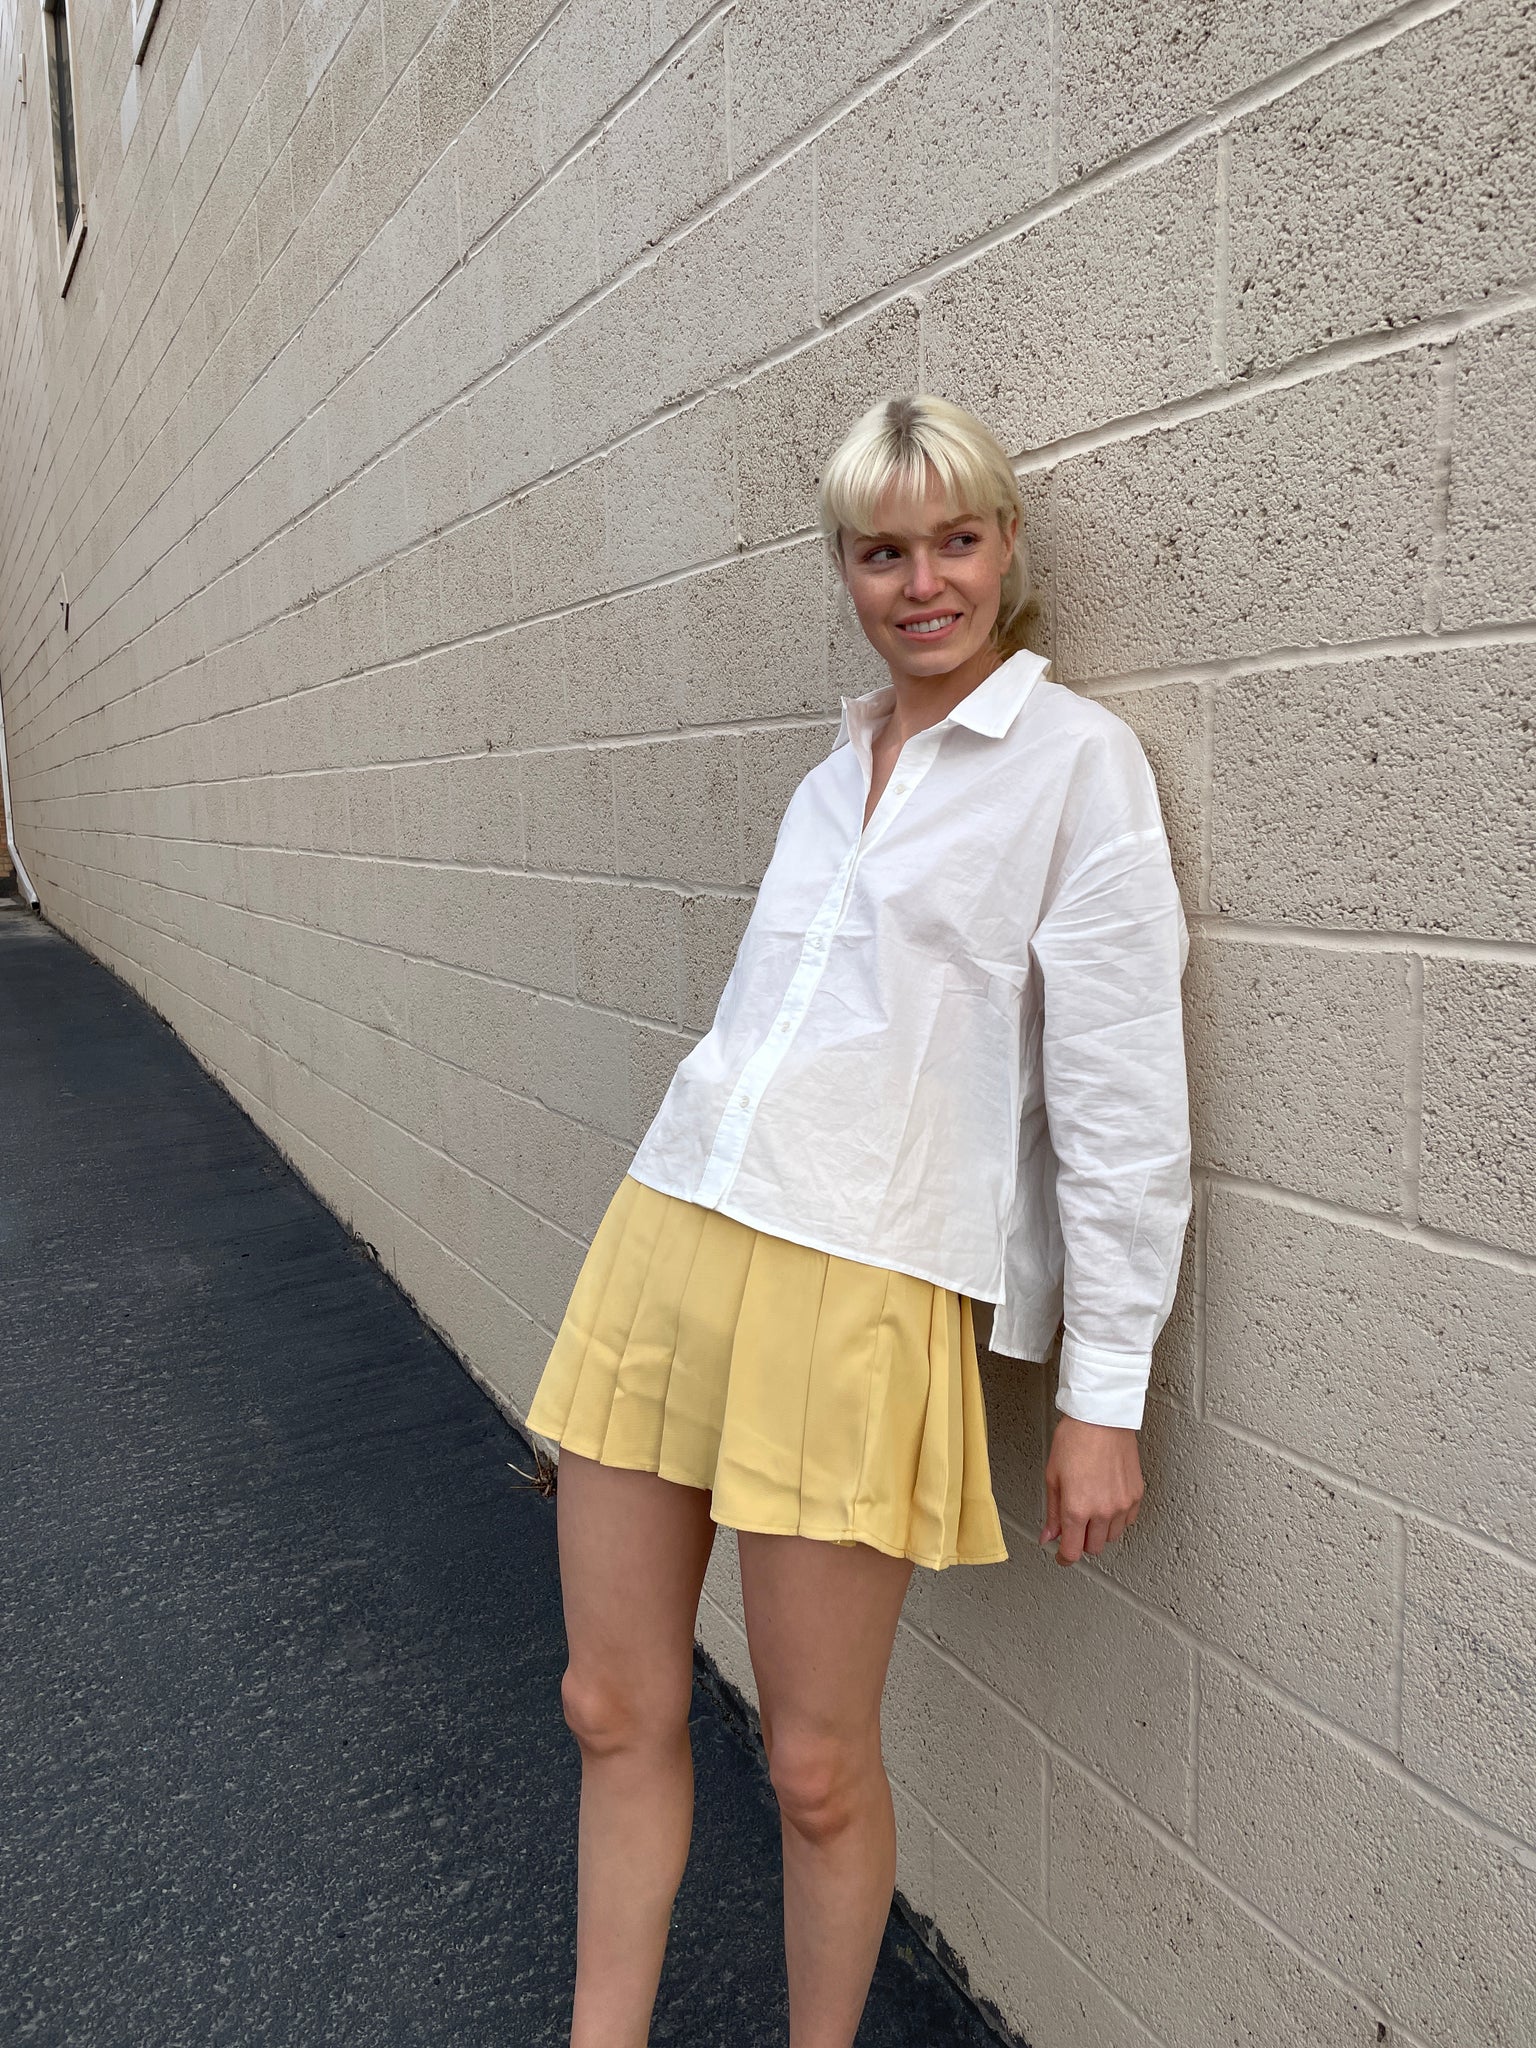 The Lemon Tennis Skirt